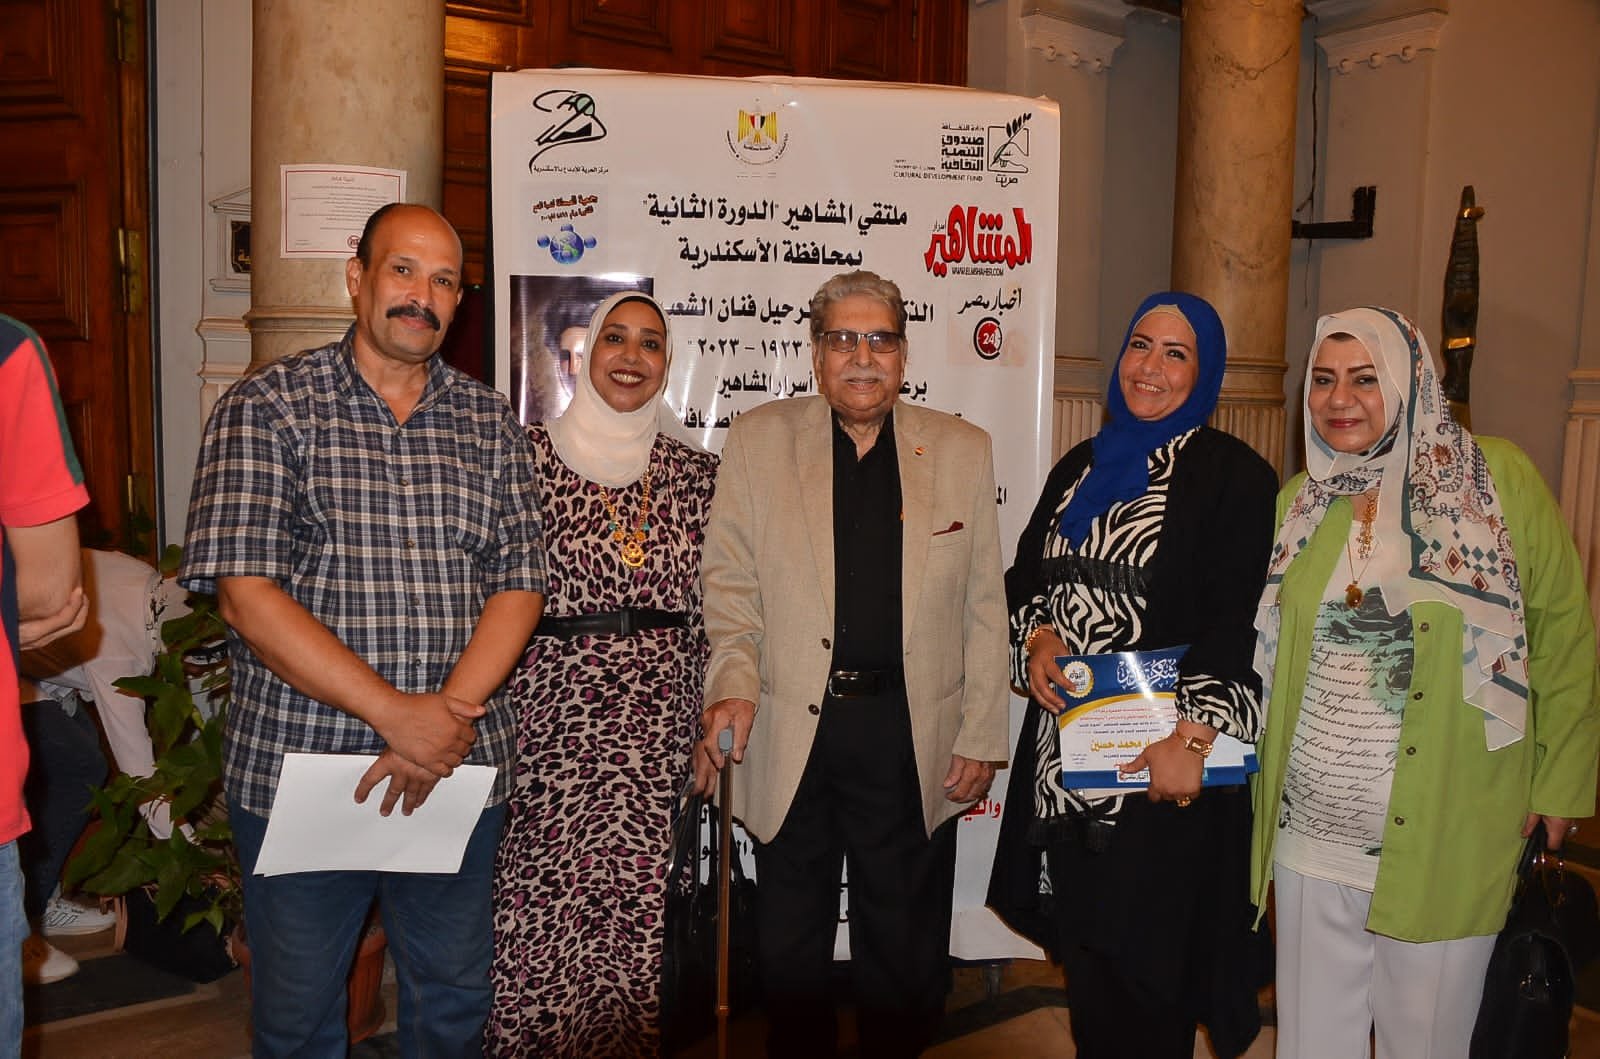 تكريم خاص للفنان الكبير عثمان محمد علي في الدورة الثانية لملتقى المشاهير بالأسكندرية